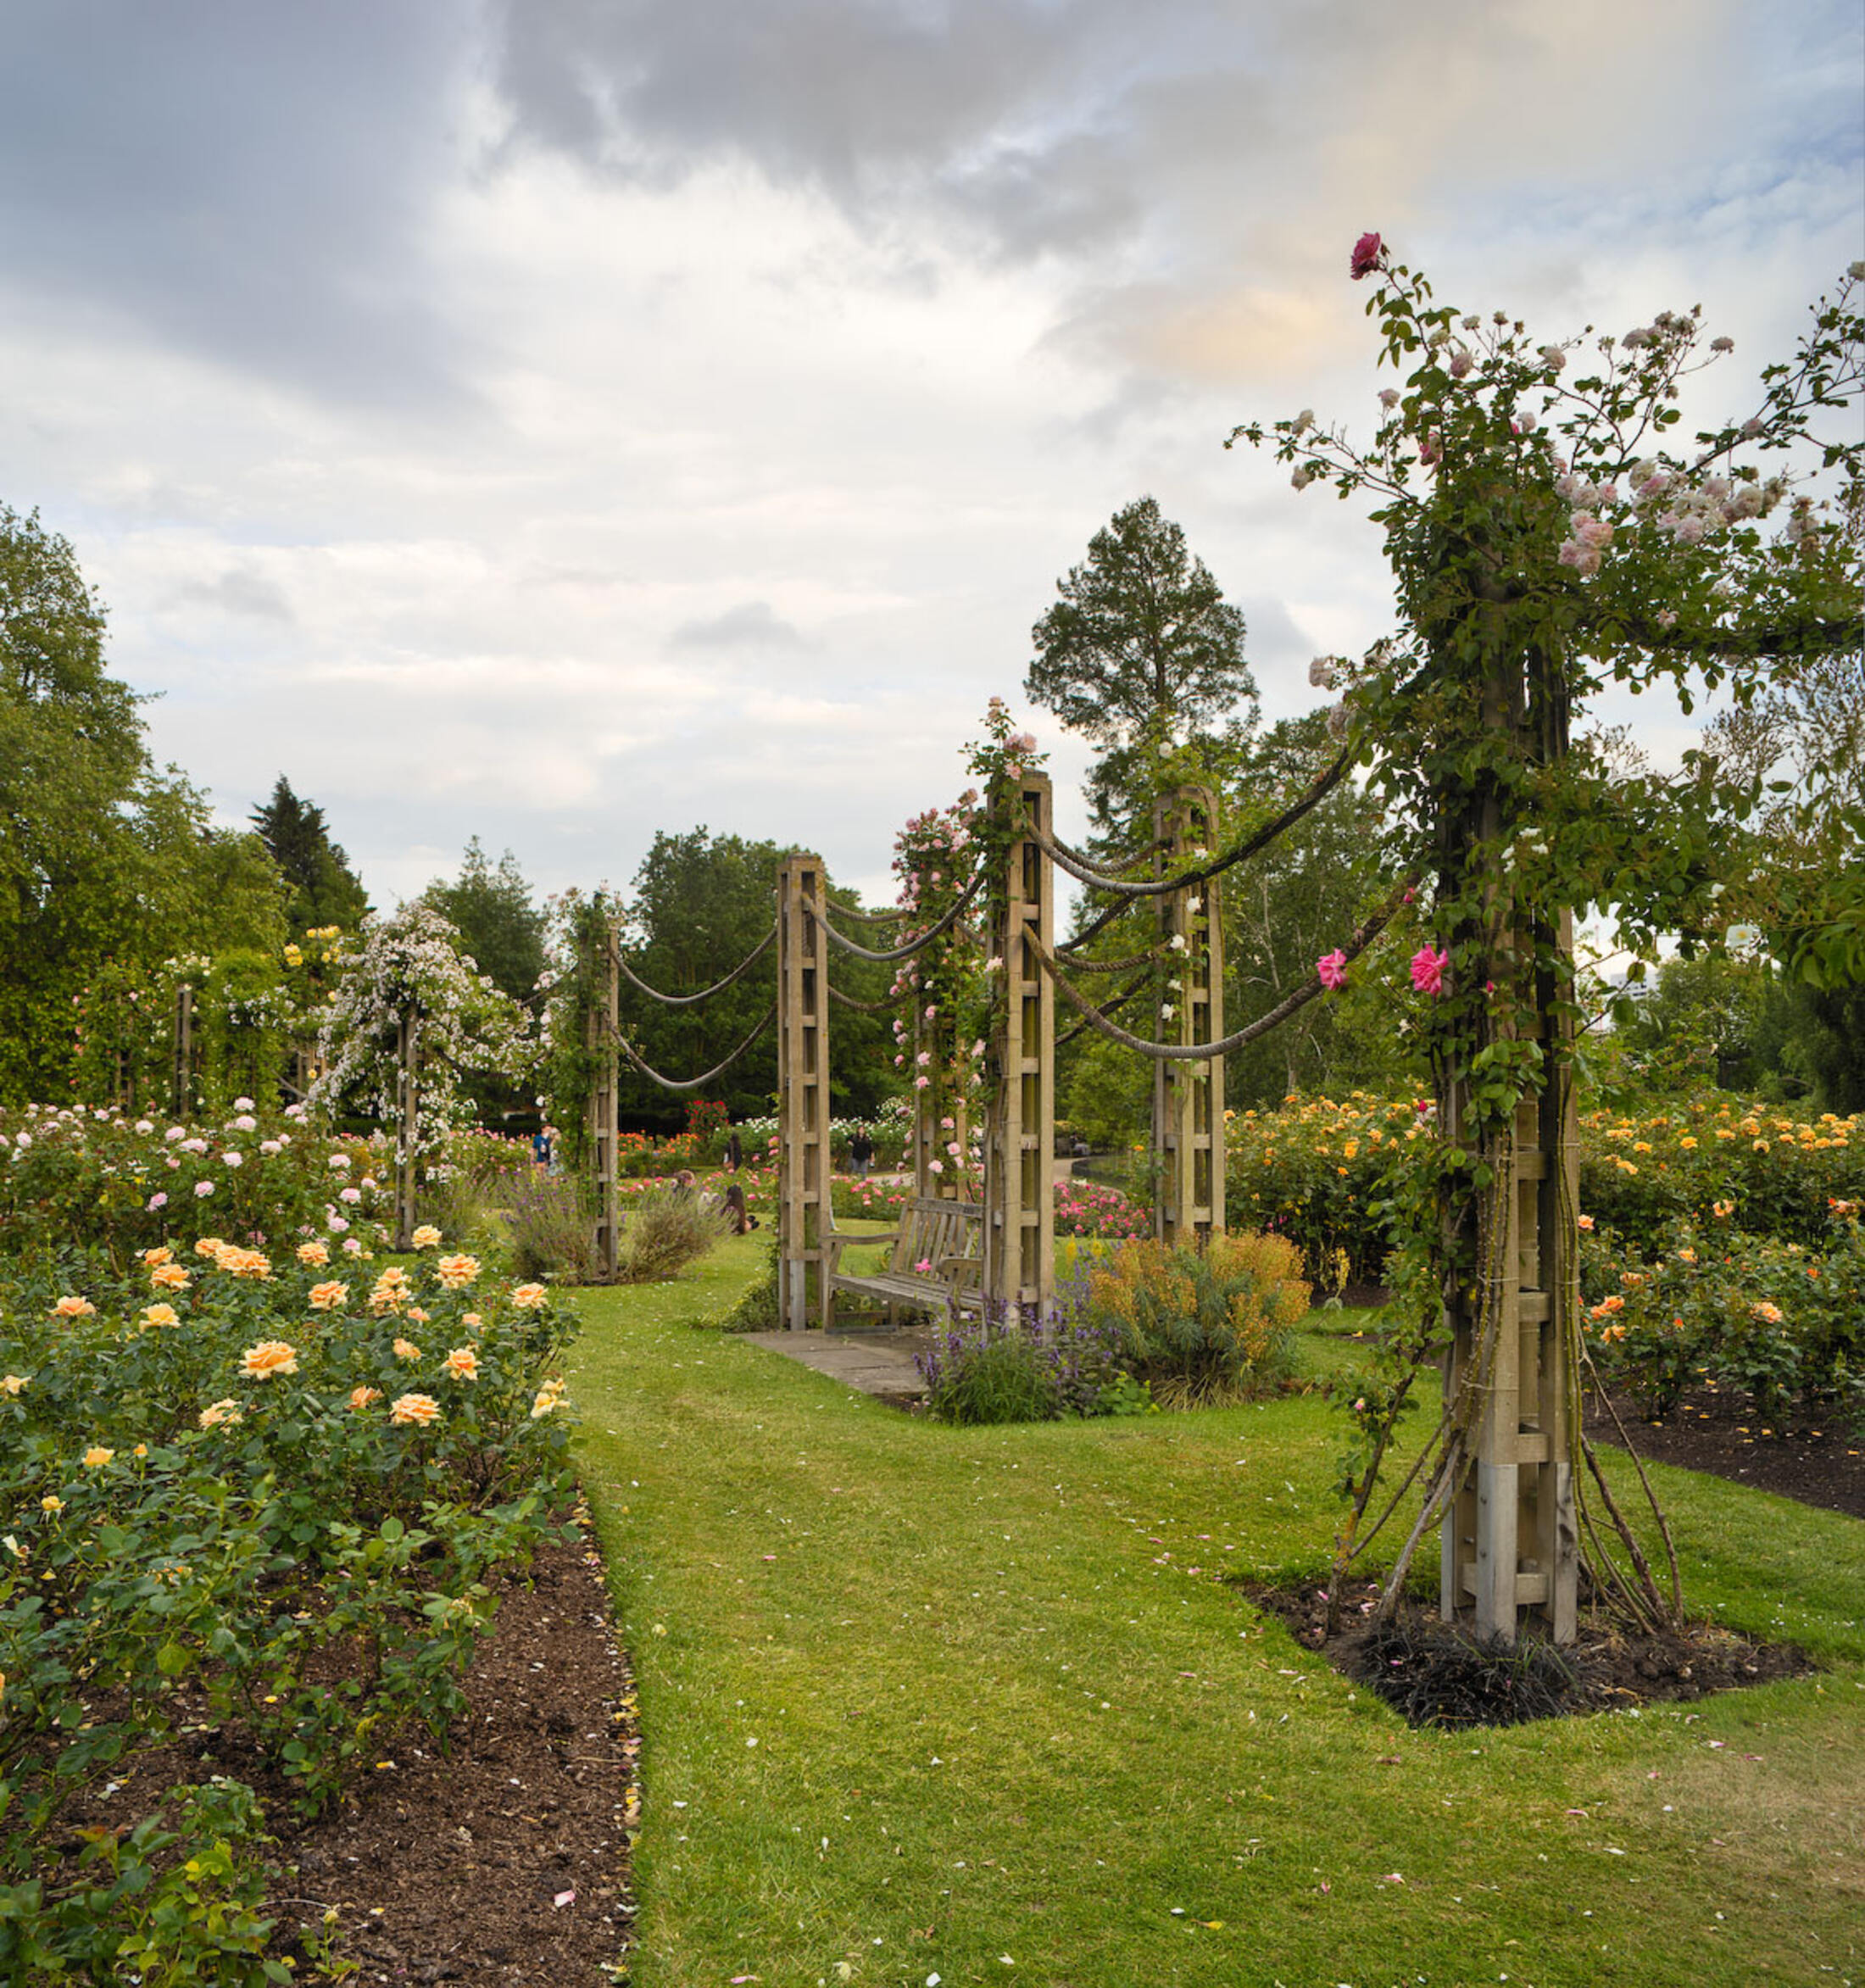 Queen Mary's garden